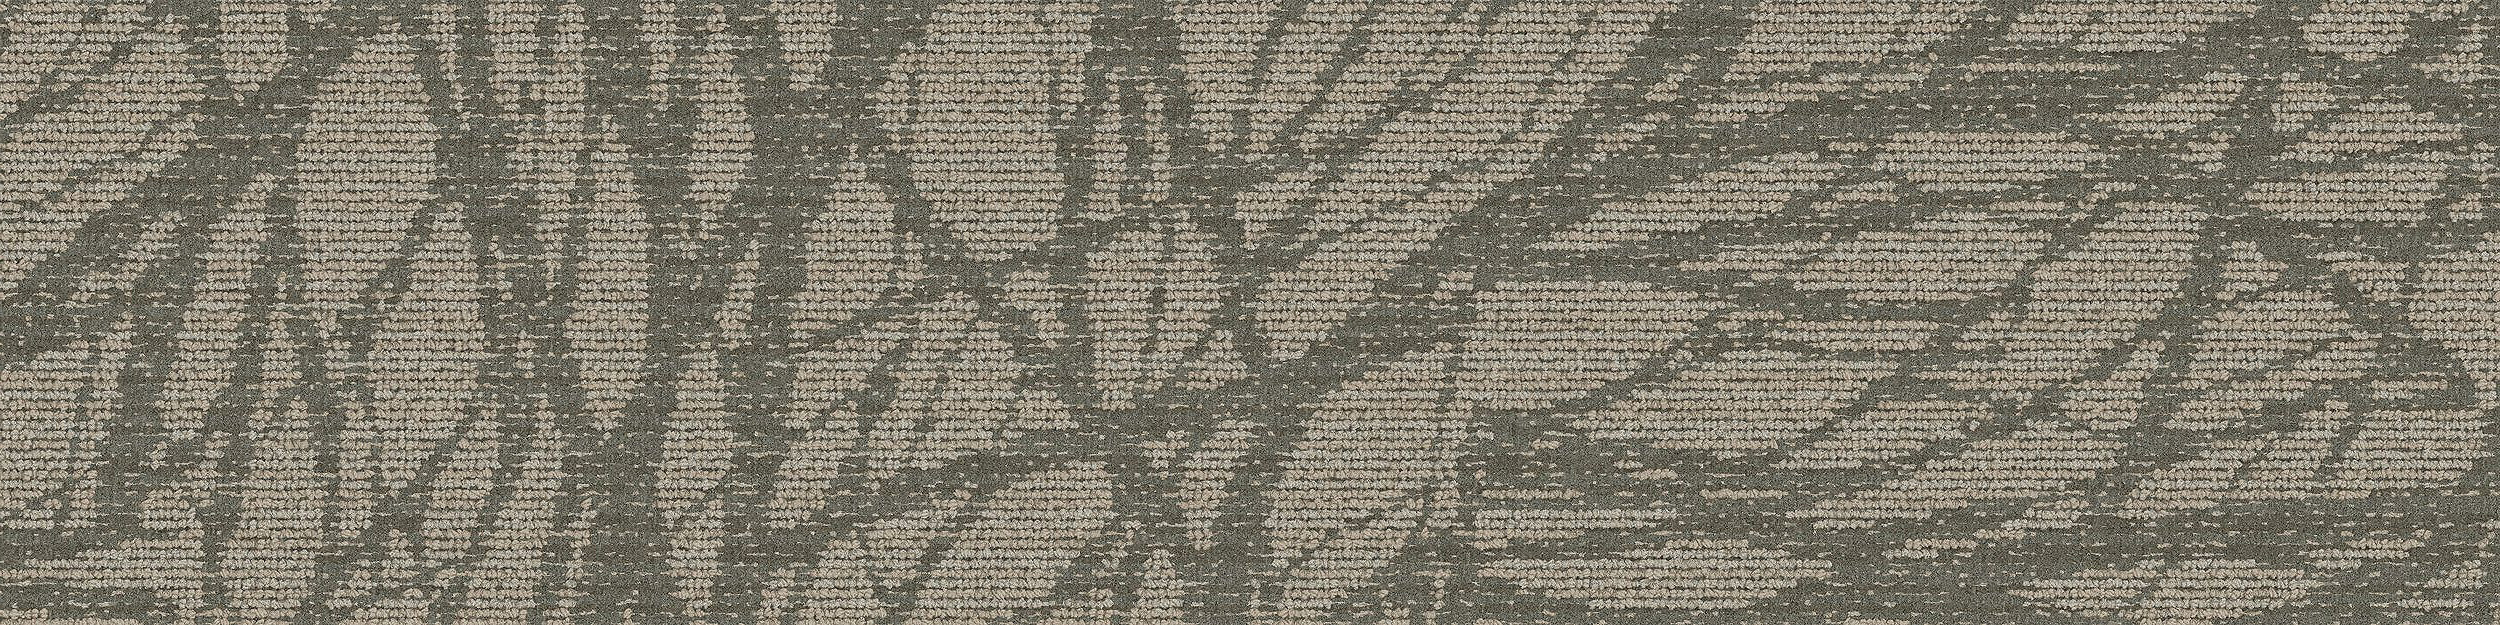 GN161 Carpet Tile In Pewter image number 4